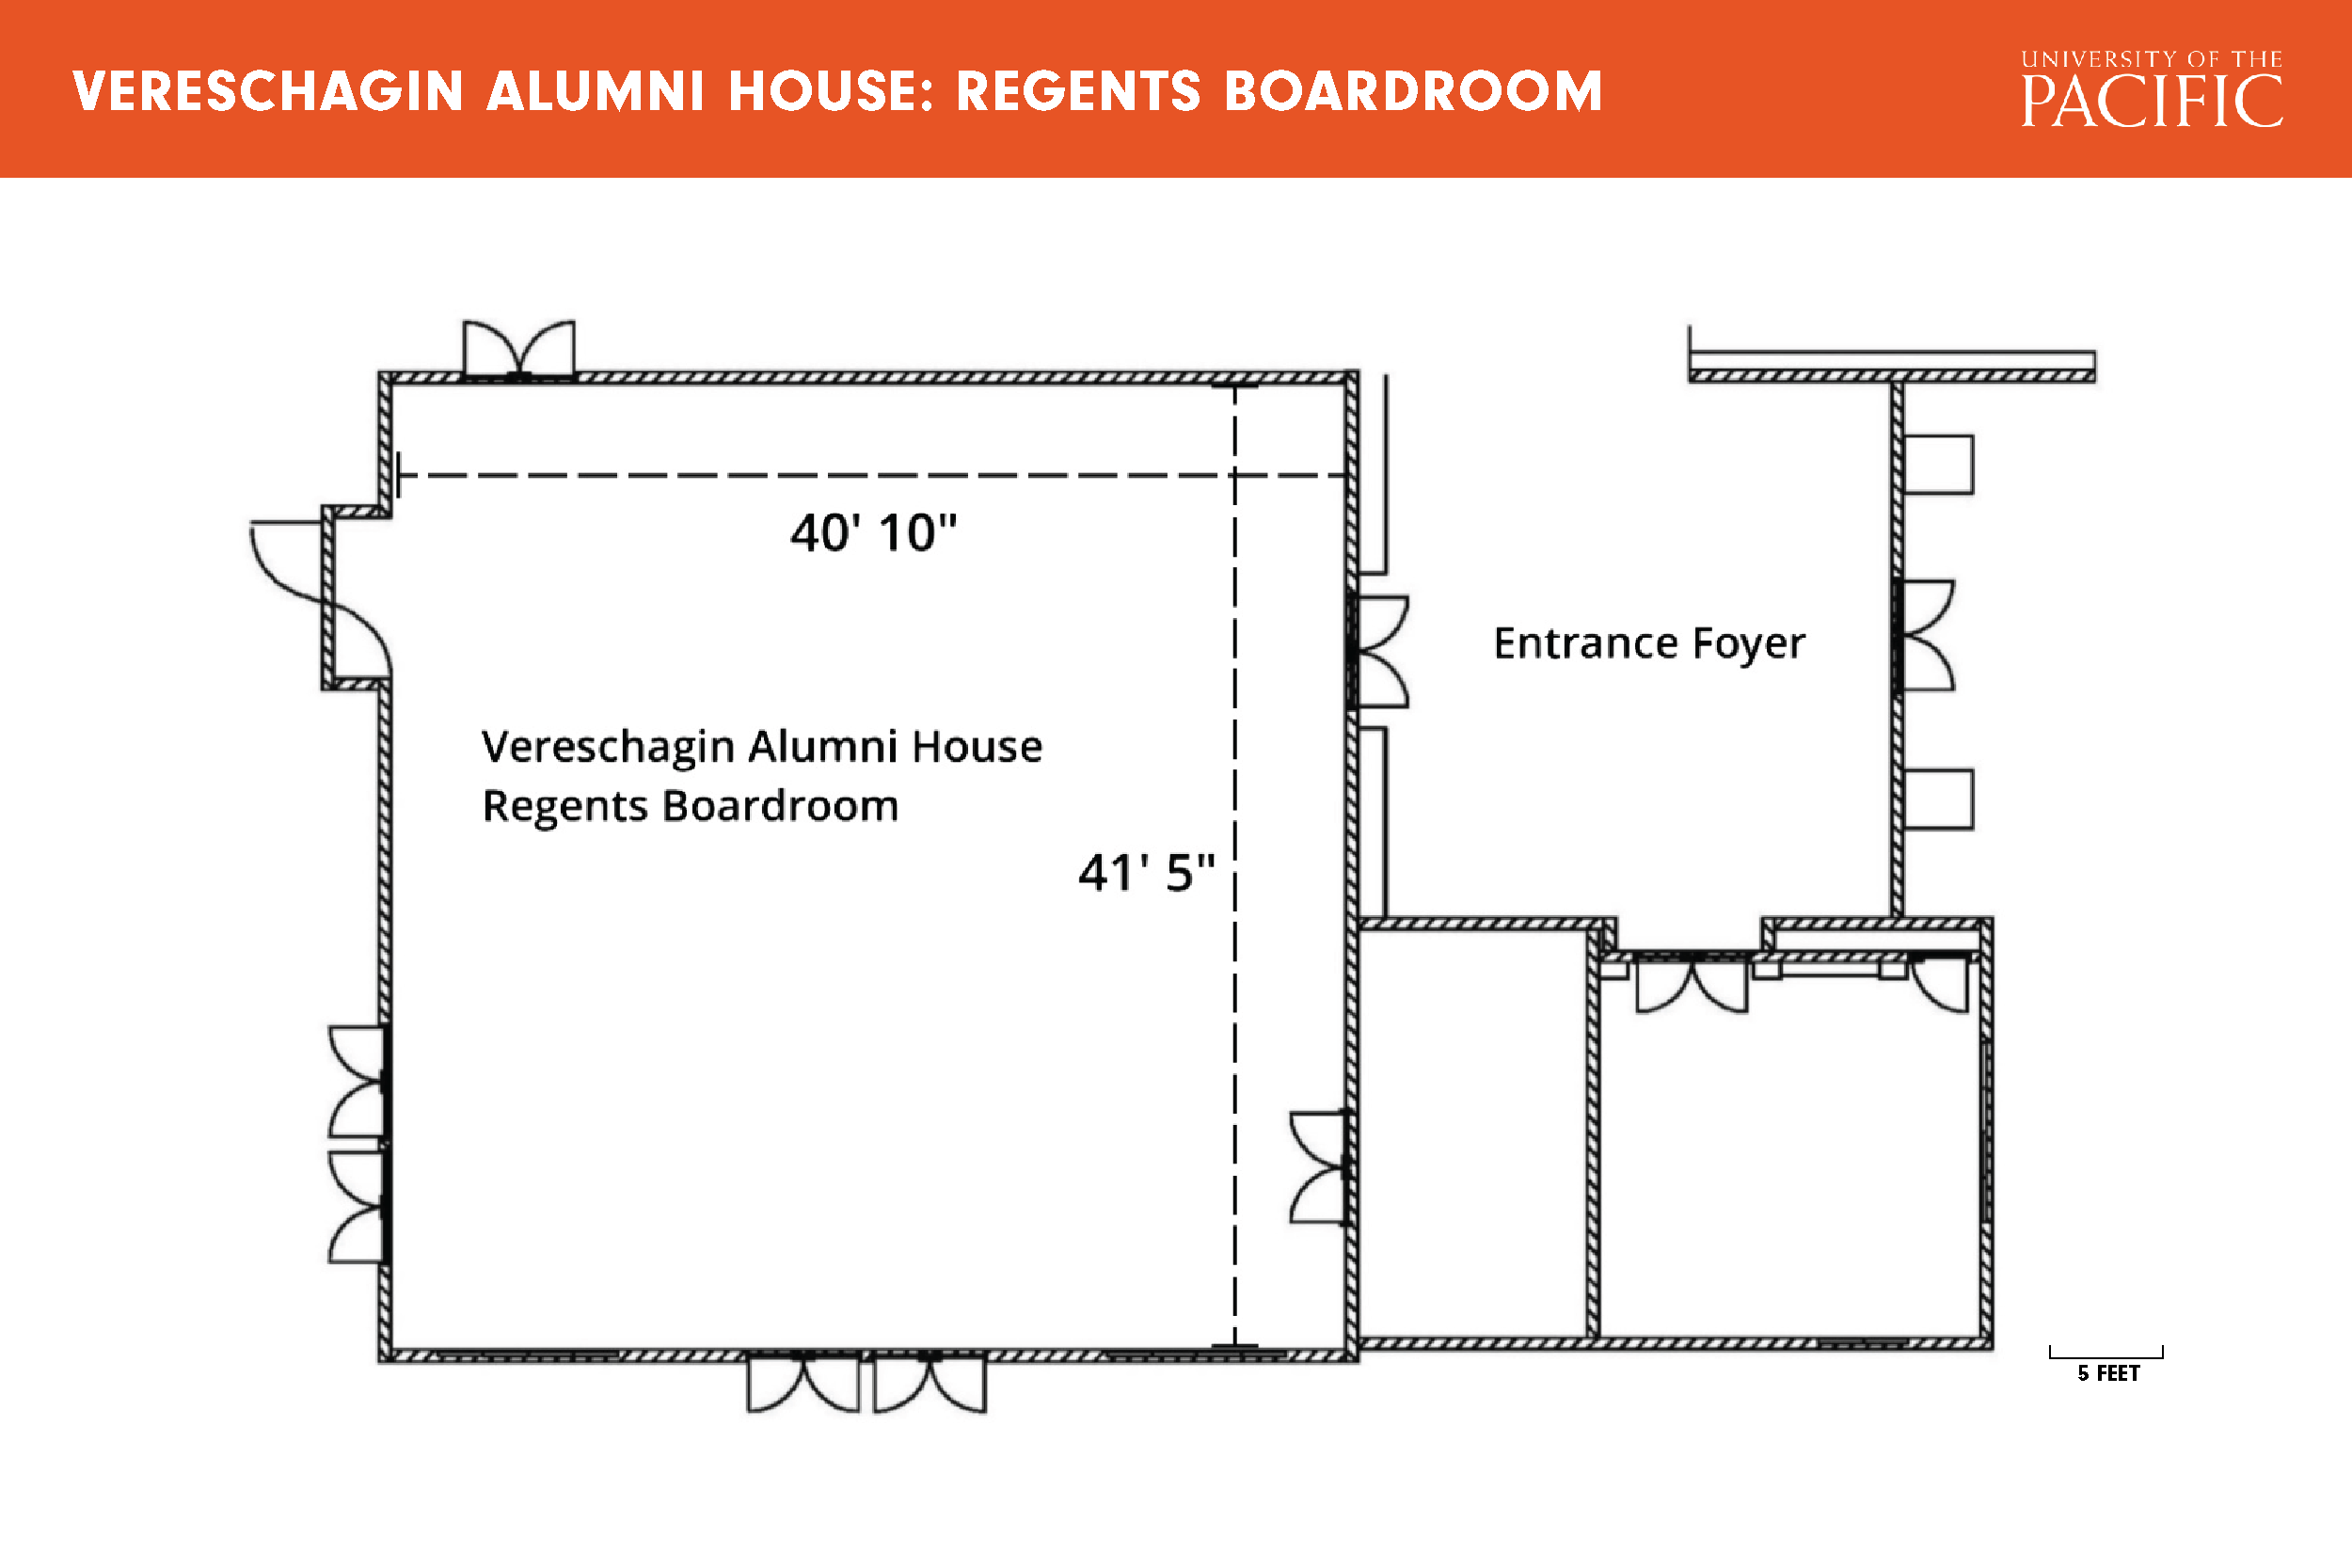 Regents Board Room floor plan